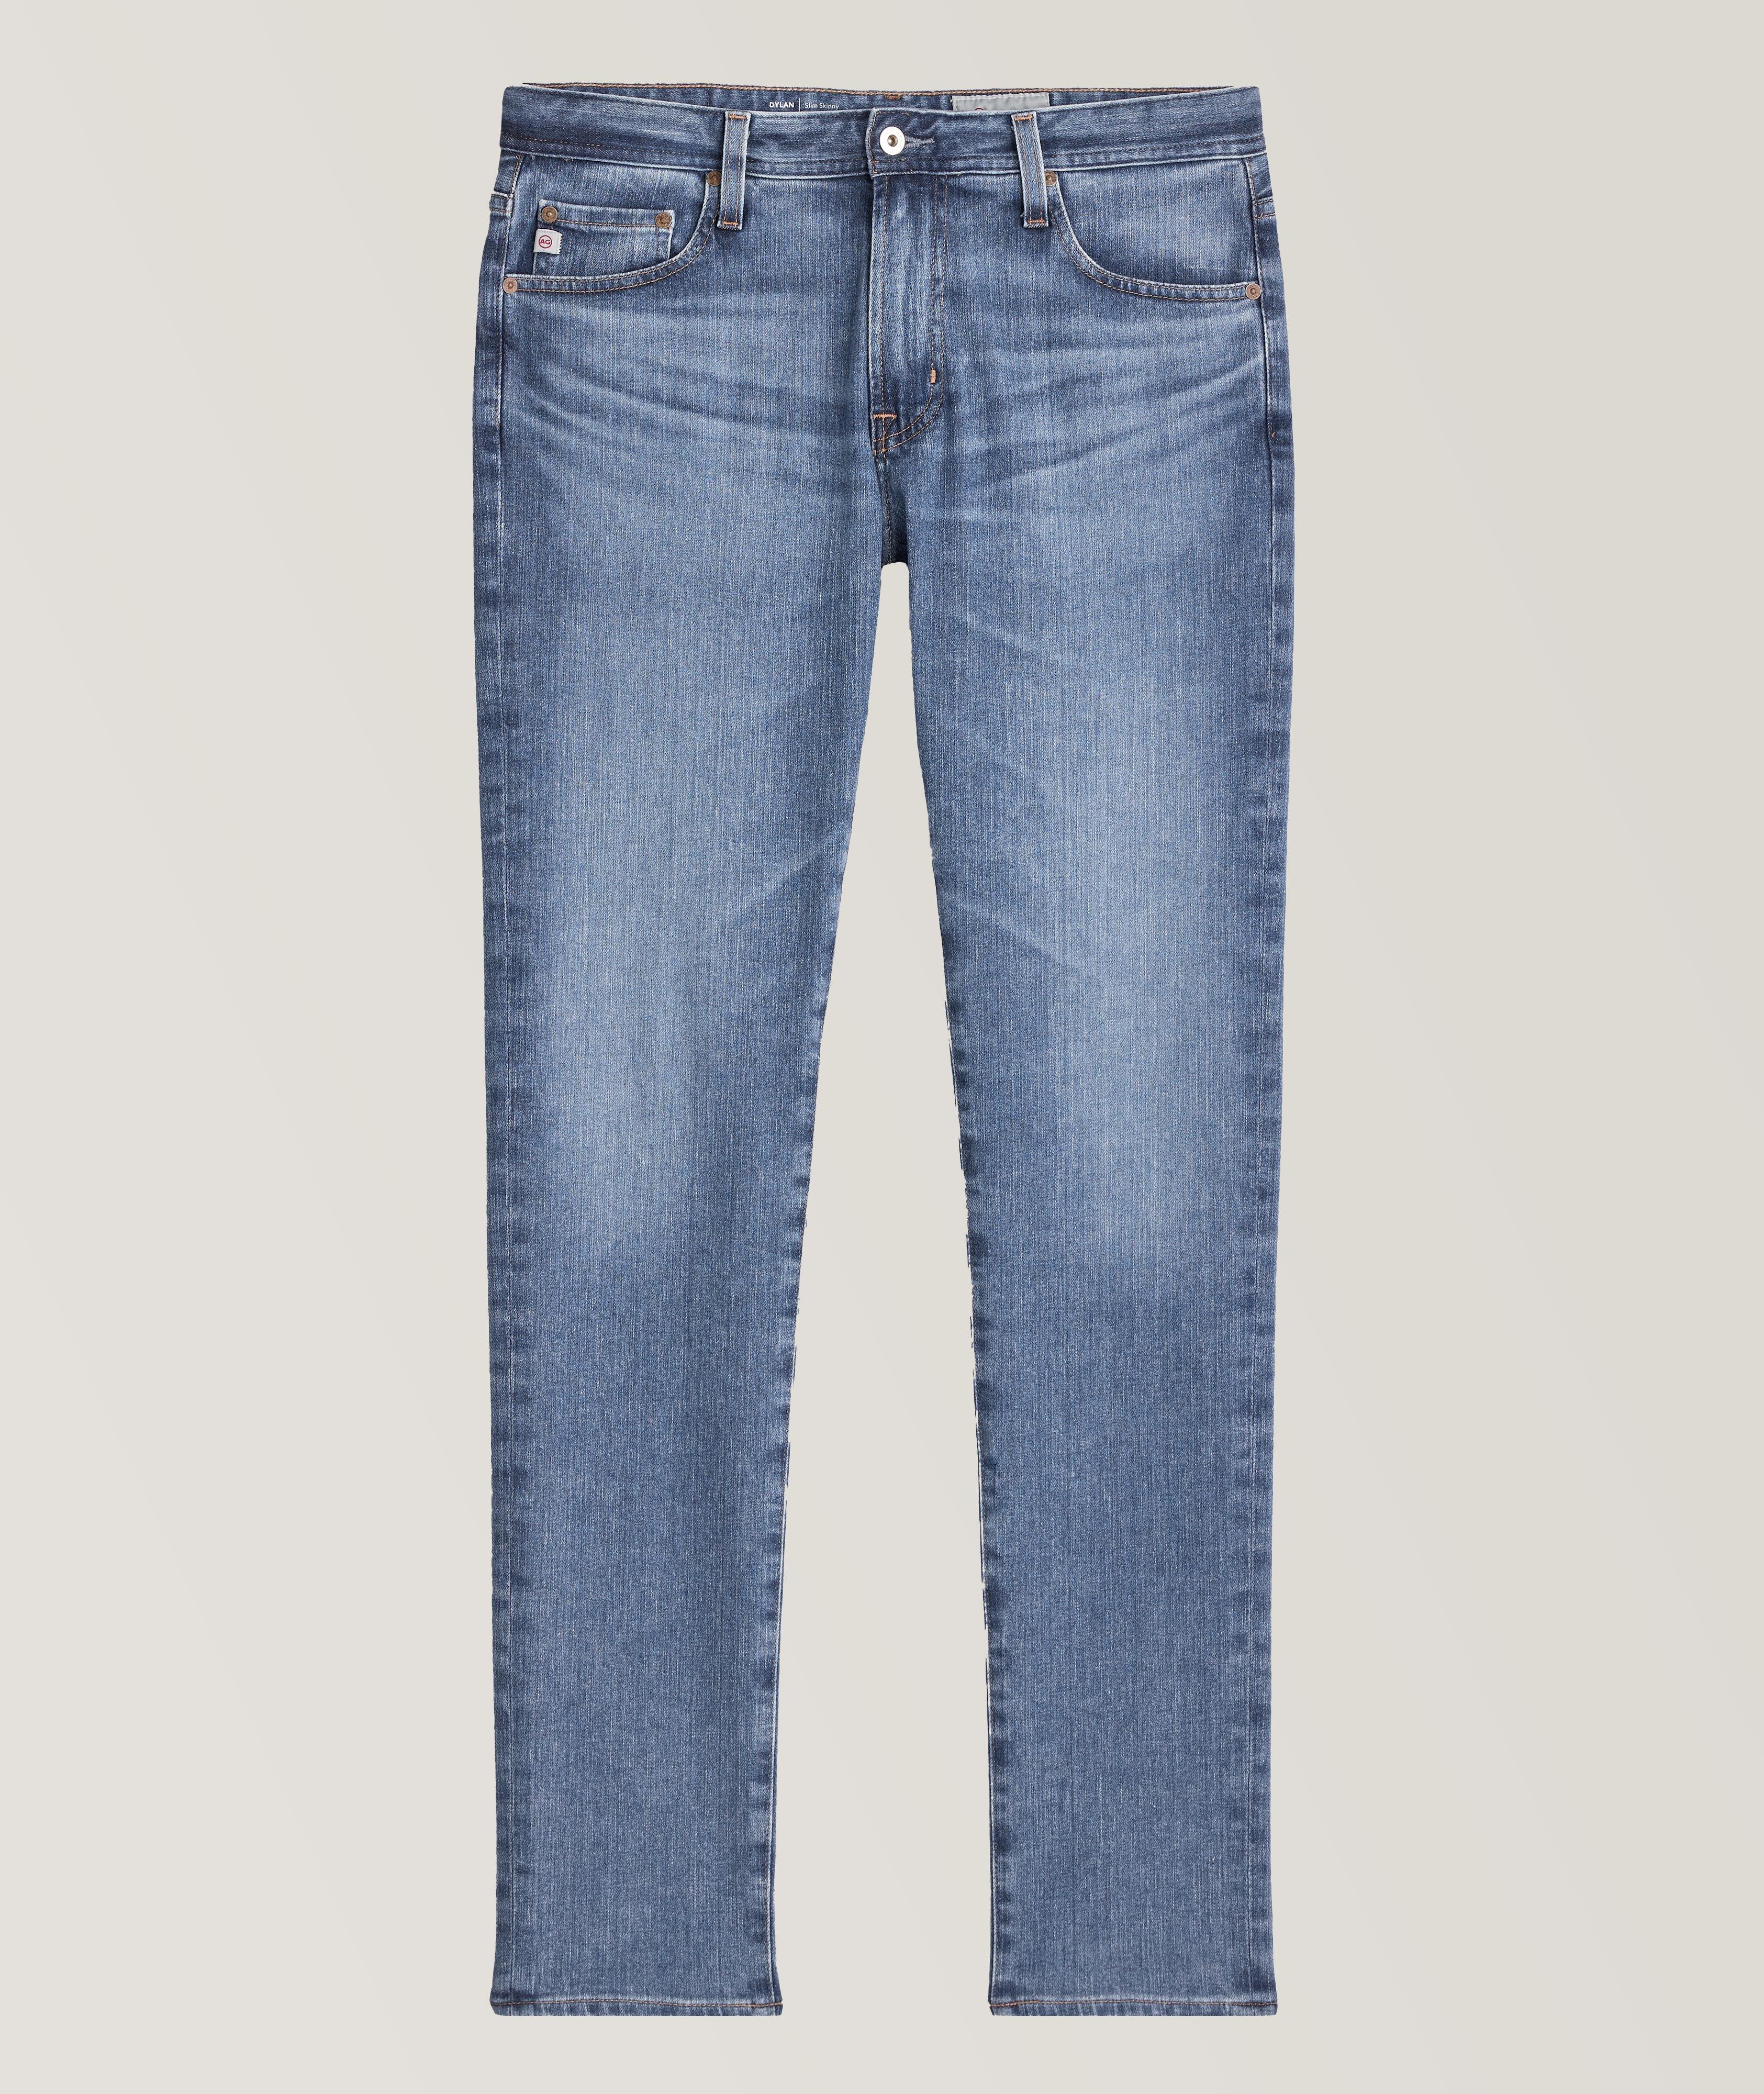 Dylan Slim-Skinny Vapor Washed Jeans image 0